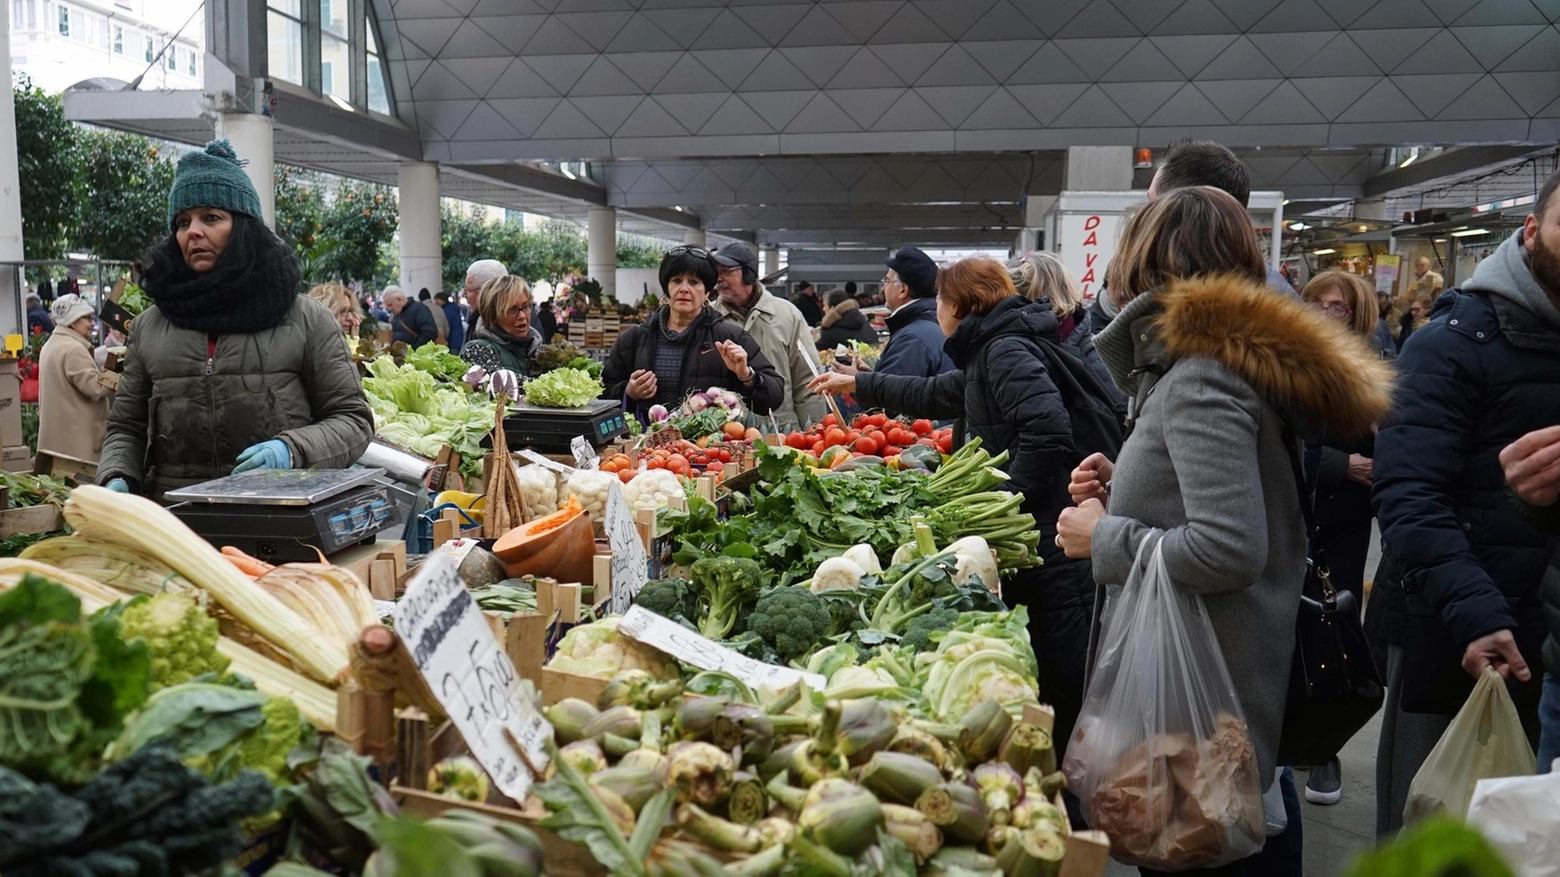 "Crocieristi in piazza Cavour". Le proposte degli ambulanti per rivitalizzare il mercato: "Pronti a metterci in gioco"